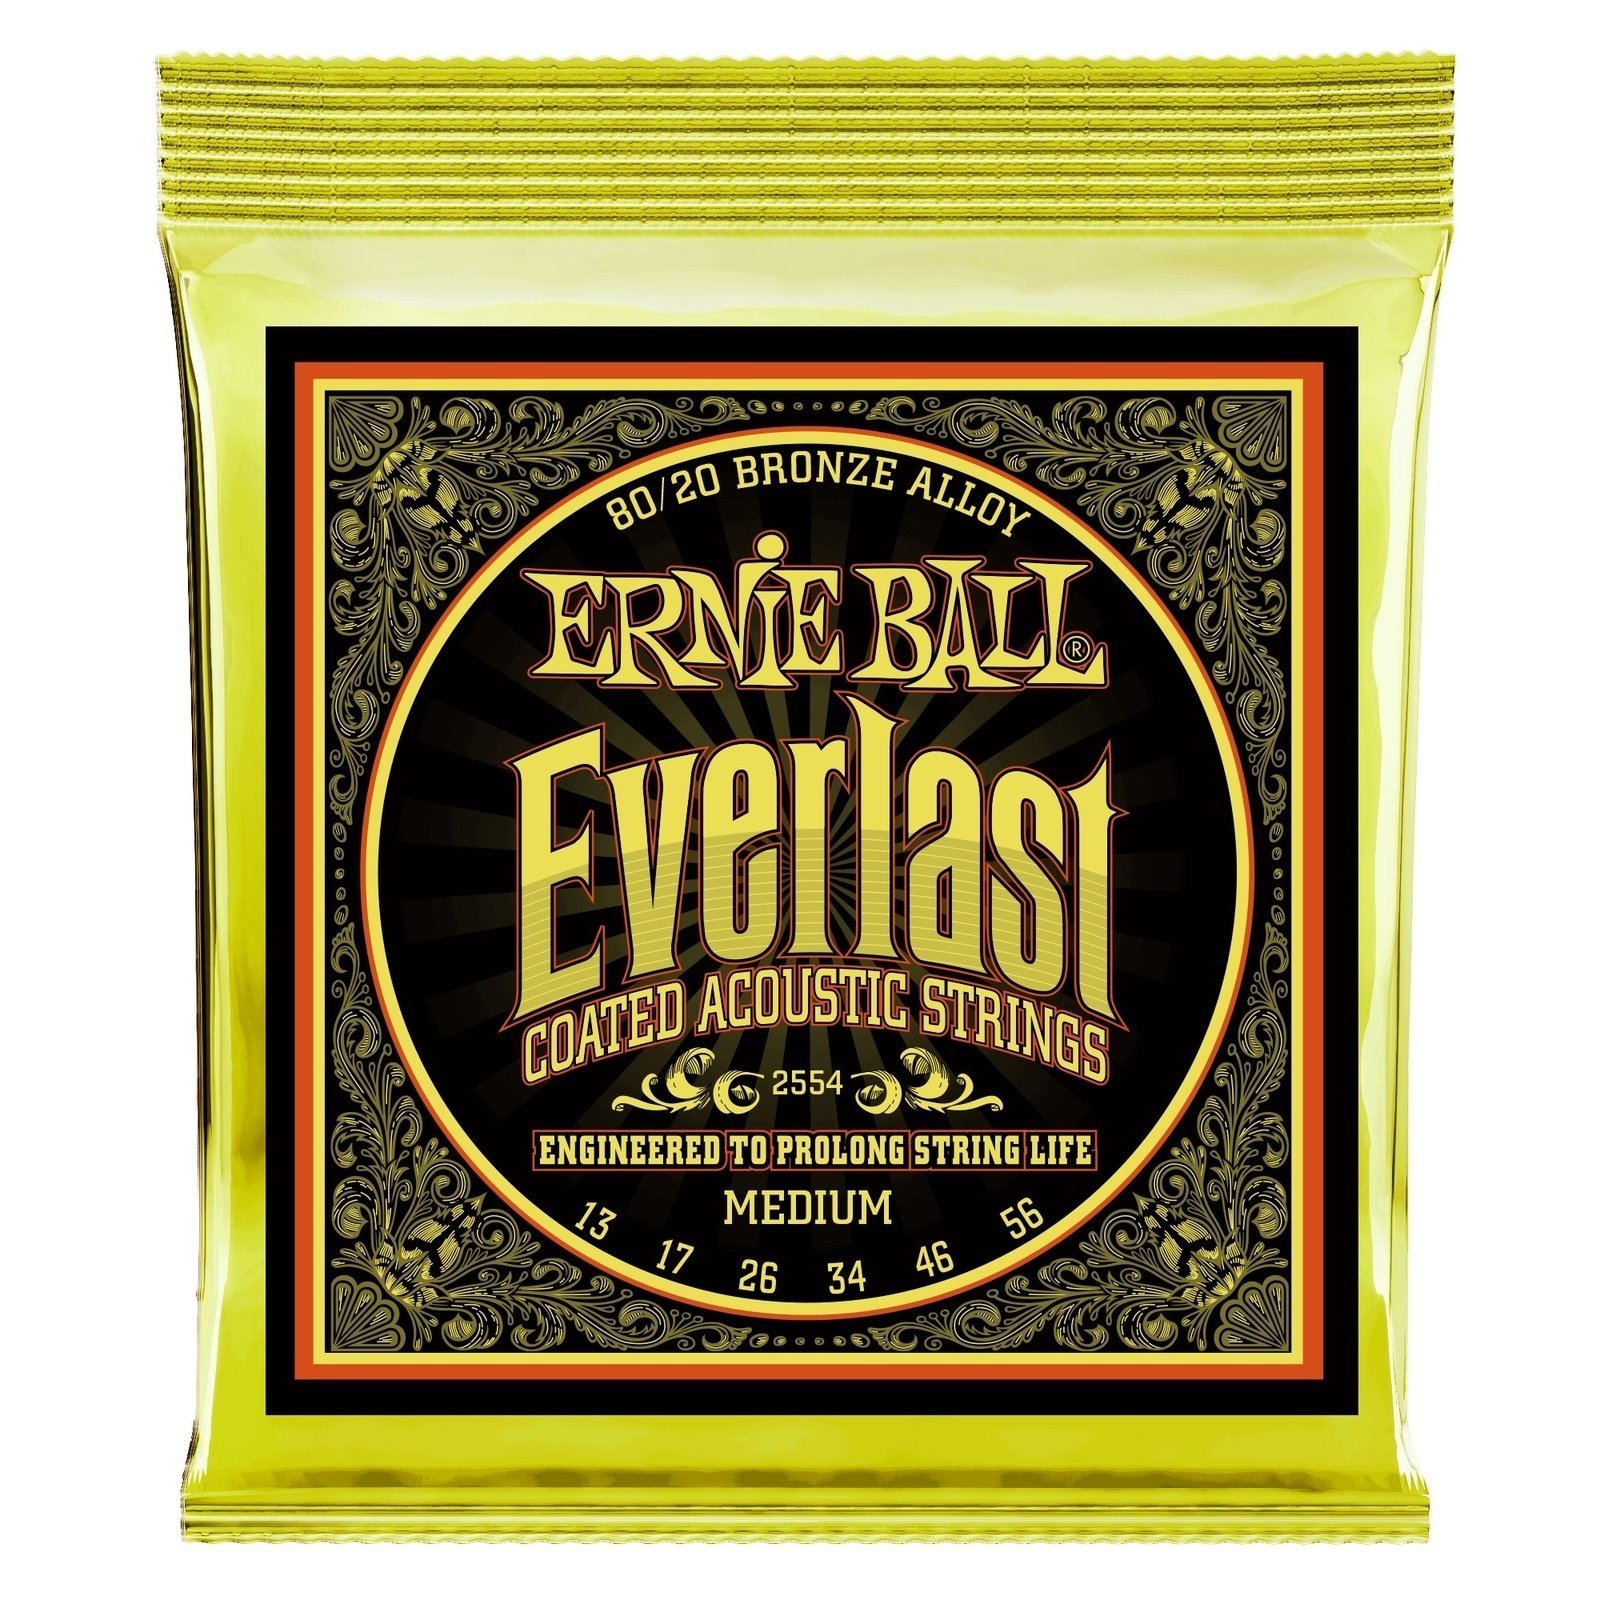 Akusztikus gitárhúrok Ernie Ball 2554 Everlast